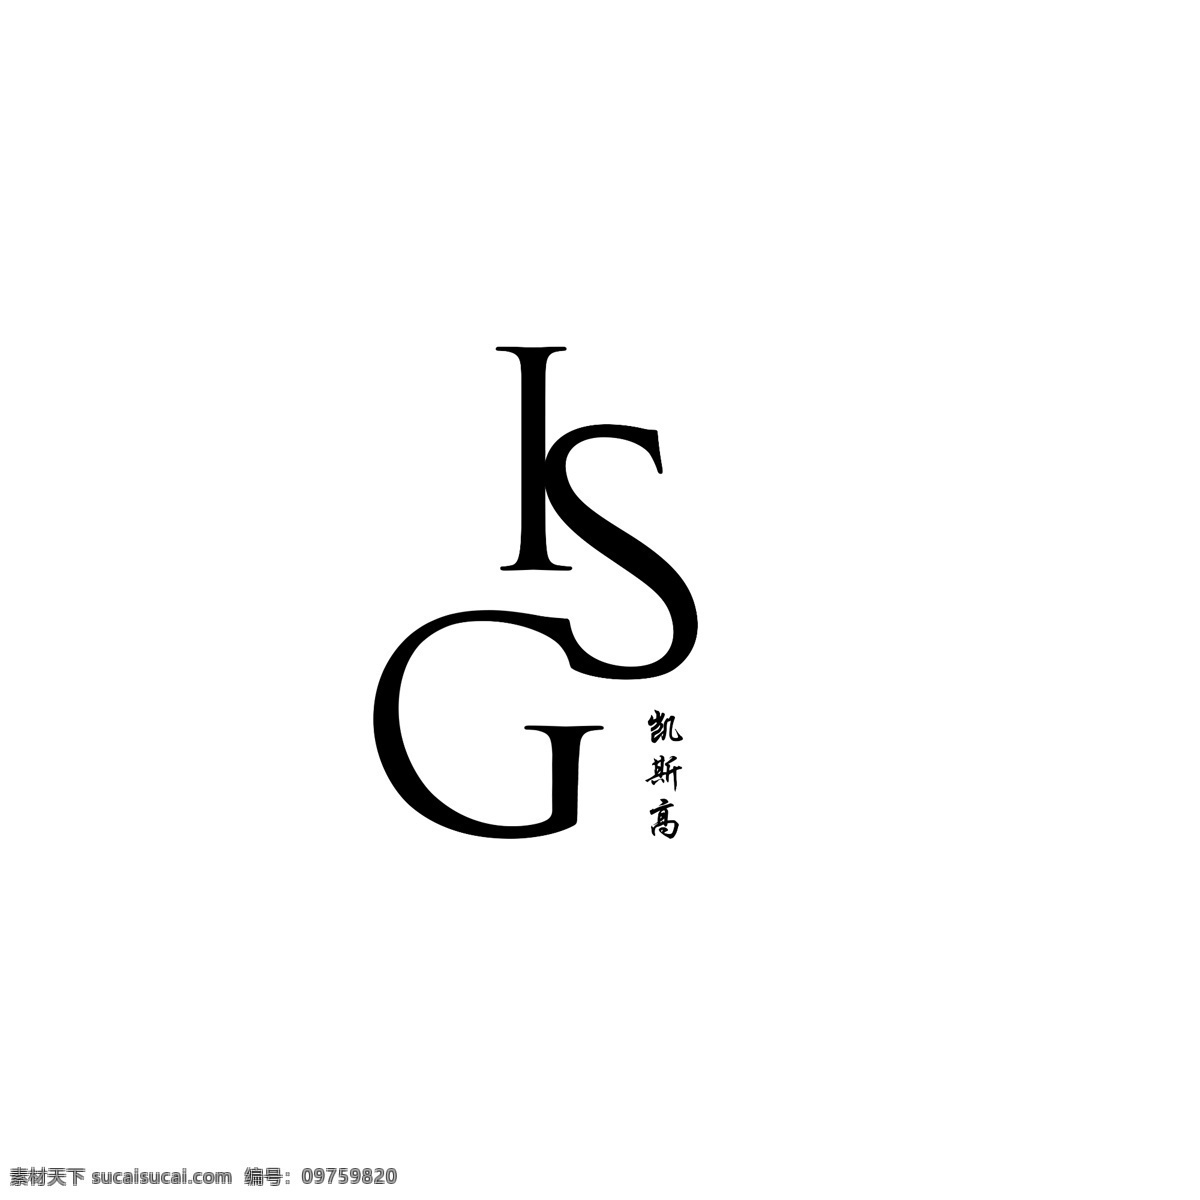 凯斯 高 旗舰店 logo 英文标志 标志